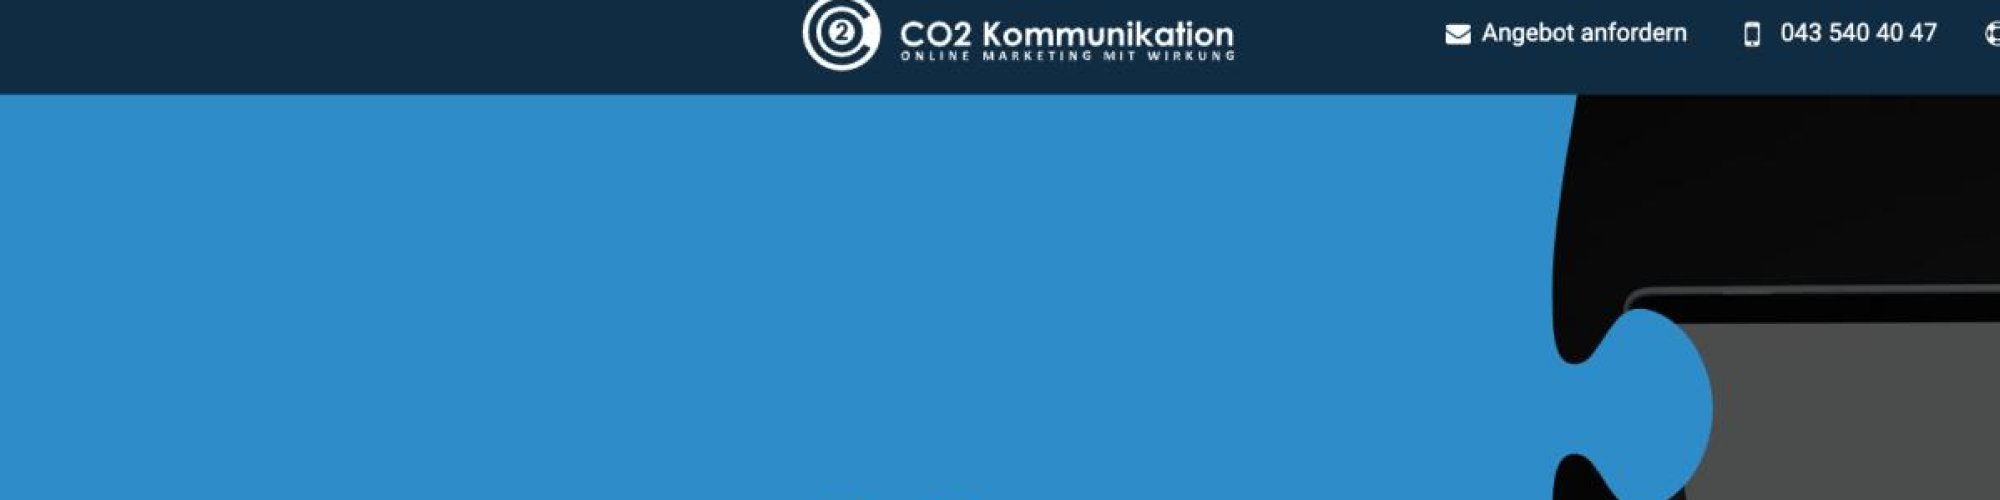 co2-kommunikation.ch